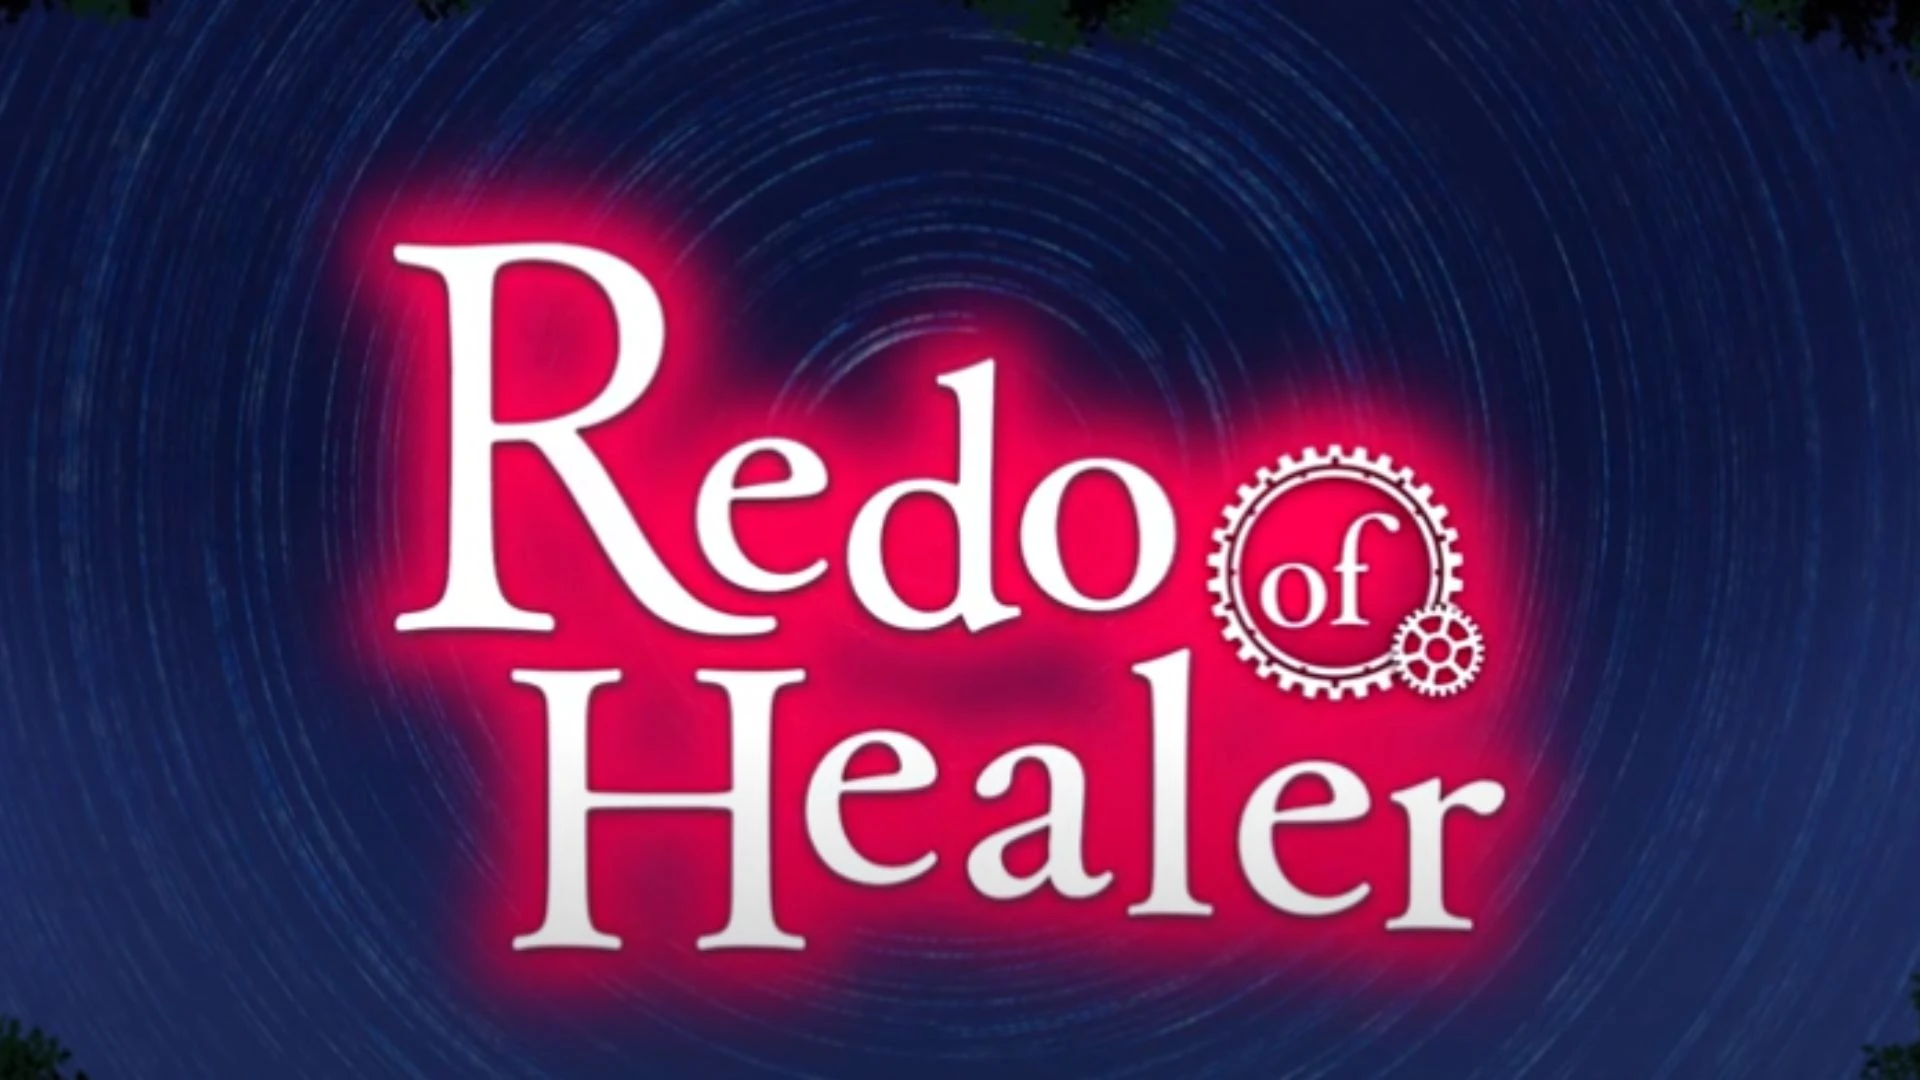 Redo of Healer Parents Guide